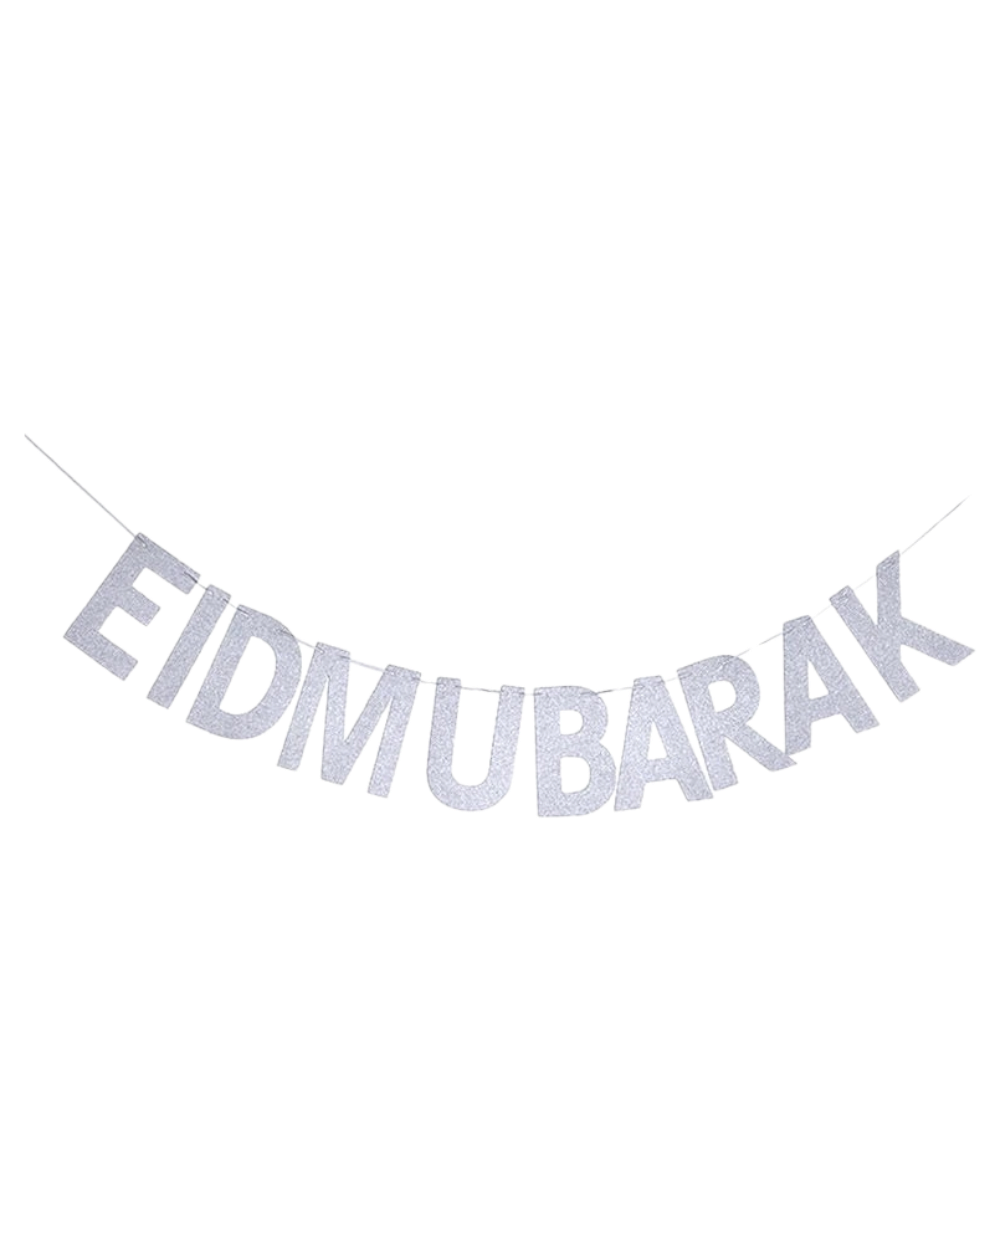 Silver Glitter Eid Mubarak Banners